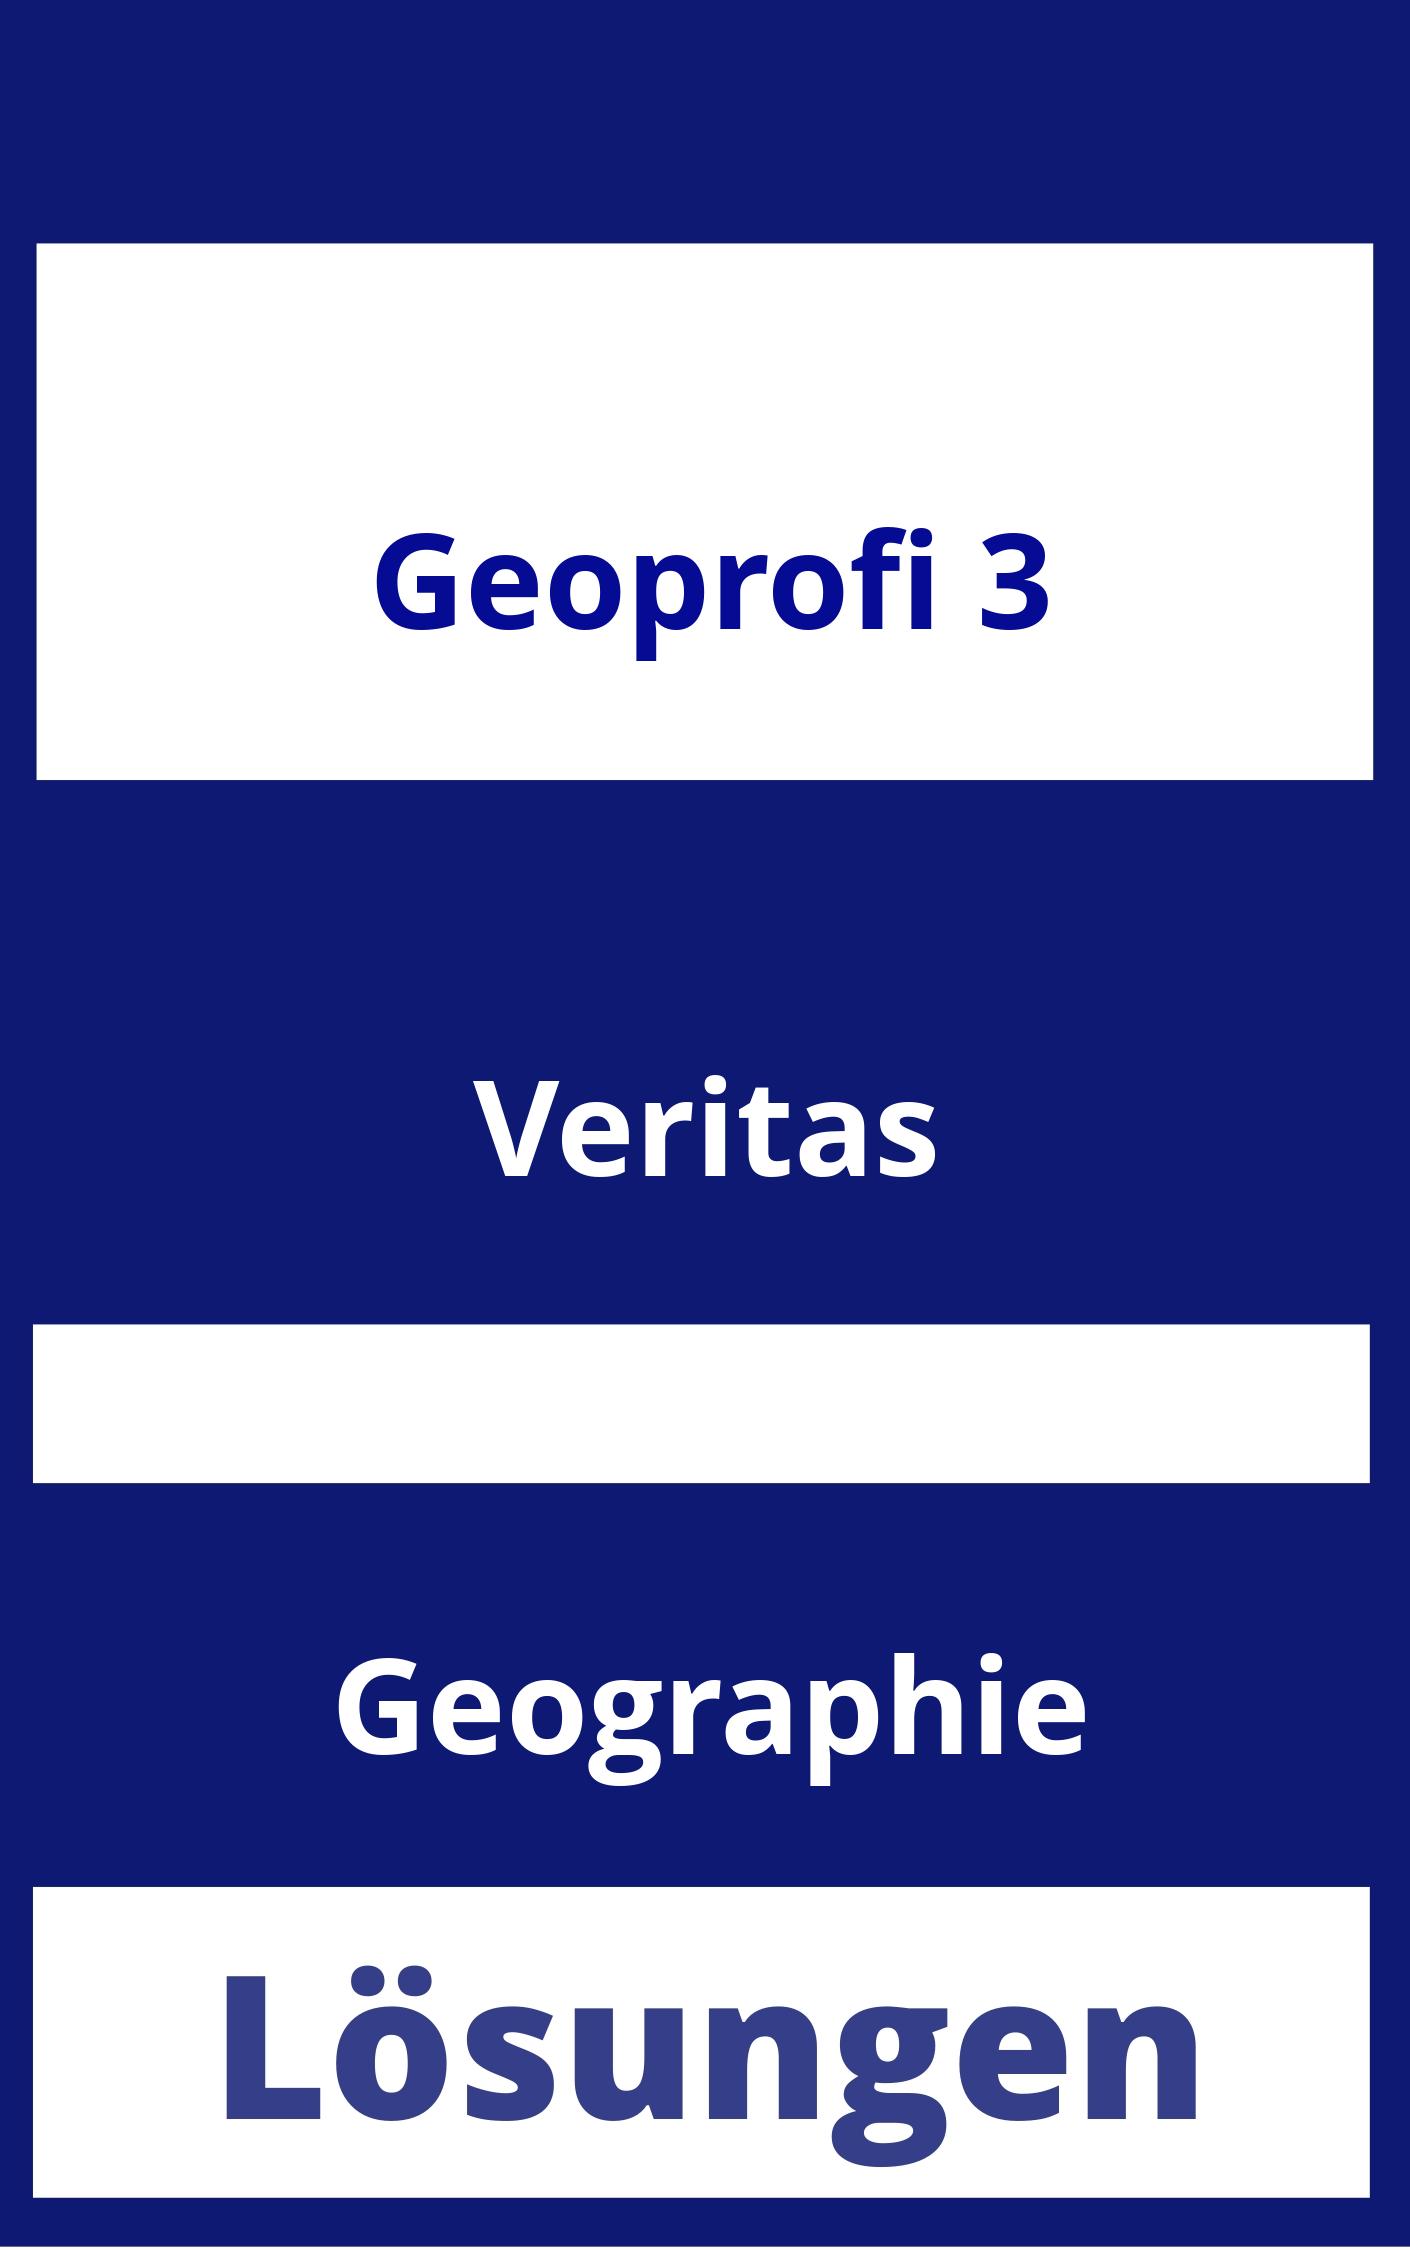 GEOprofi 3